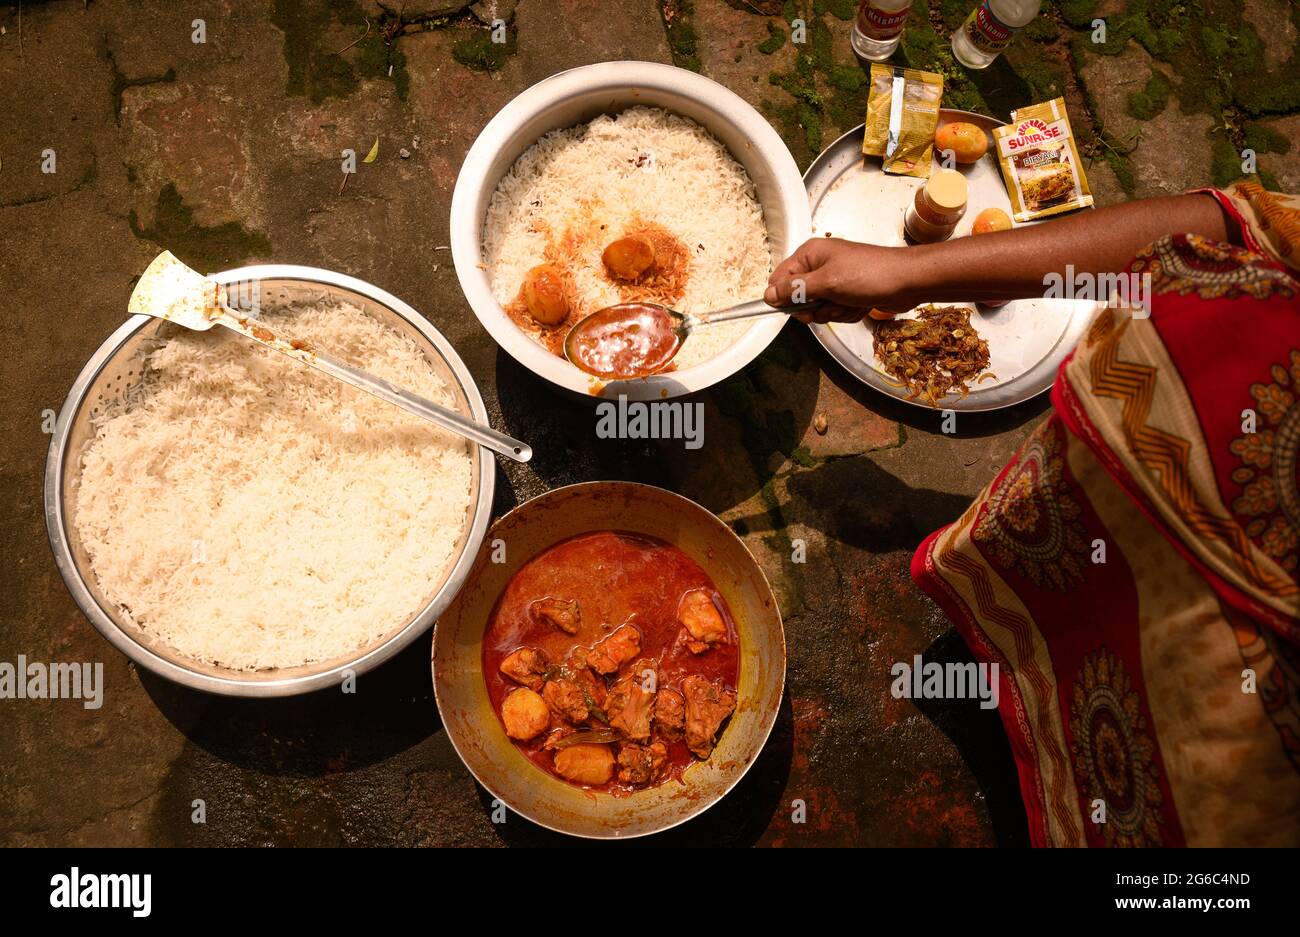 Eine Frau kocht Biryani. Biryani ist ein indo-arisches Wort, das vom persischen Wort „Birian“ abgeleitet wurde, was ‘vor dem Kochen gebraten’ und „Birinj“, das persische Wort für Reis, bedeutet. Die Biryani ist eines der beliebtesten und bestellten Gerichte in Indien. Es wird mit indischen Gewürzen, Reis und Fleisch (Huhn, Rindfleisch, Ziege, Lamm, Garnelen, Fisch), und manchmal, zusätzlich, Eier oder Gemüse wie Kartoffeln in bestimmten regionalen Sorten. Es gibt verschiedene Theorien über die Herkunft dieses leckeren Gerichts. Viele Historiker glauben, dass Biryani aus Persien stammte und von den Moguln nach Indien gebracht wurde. Stockfoto